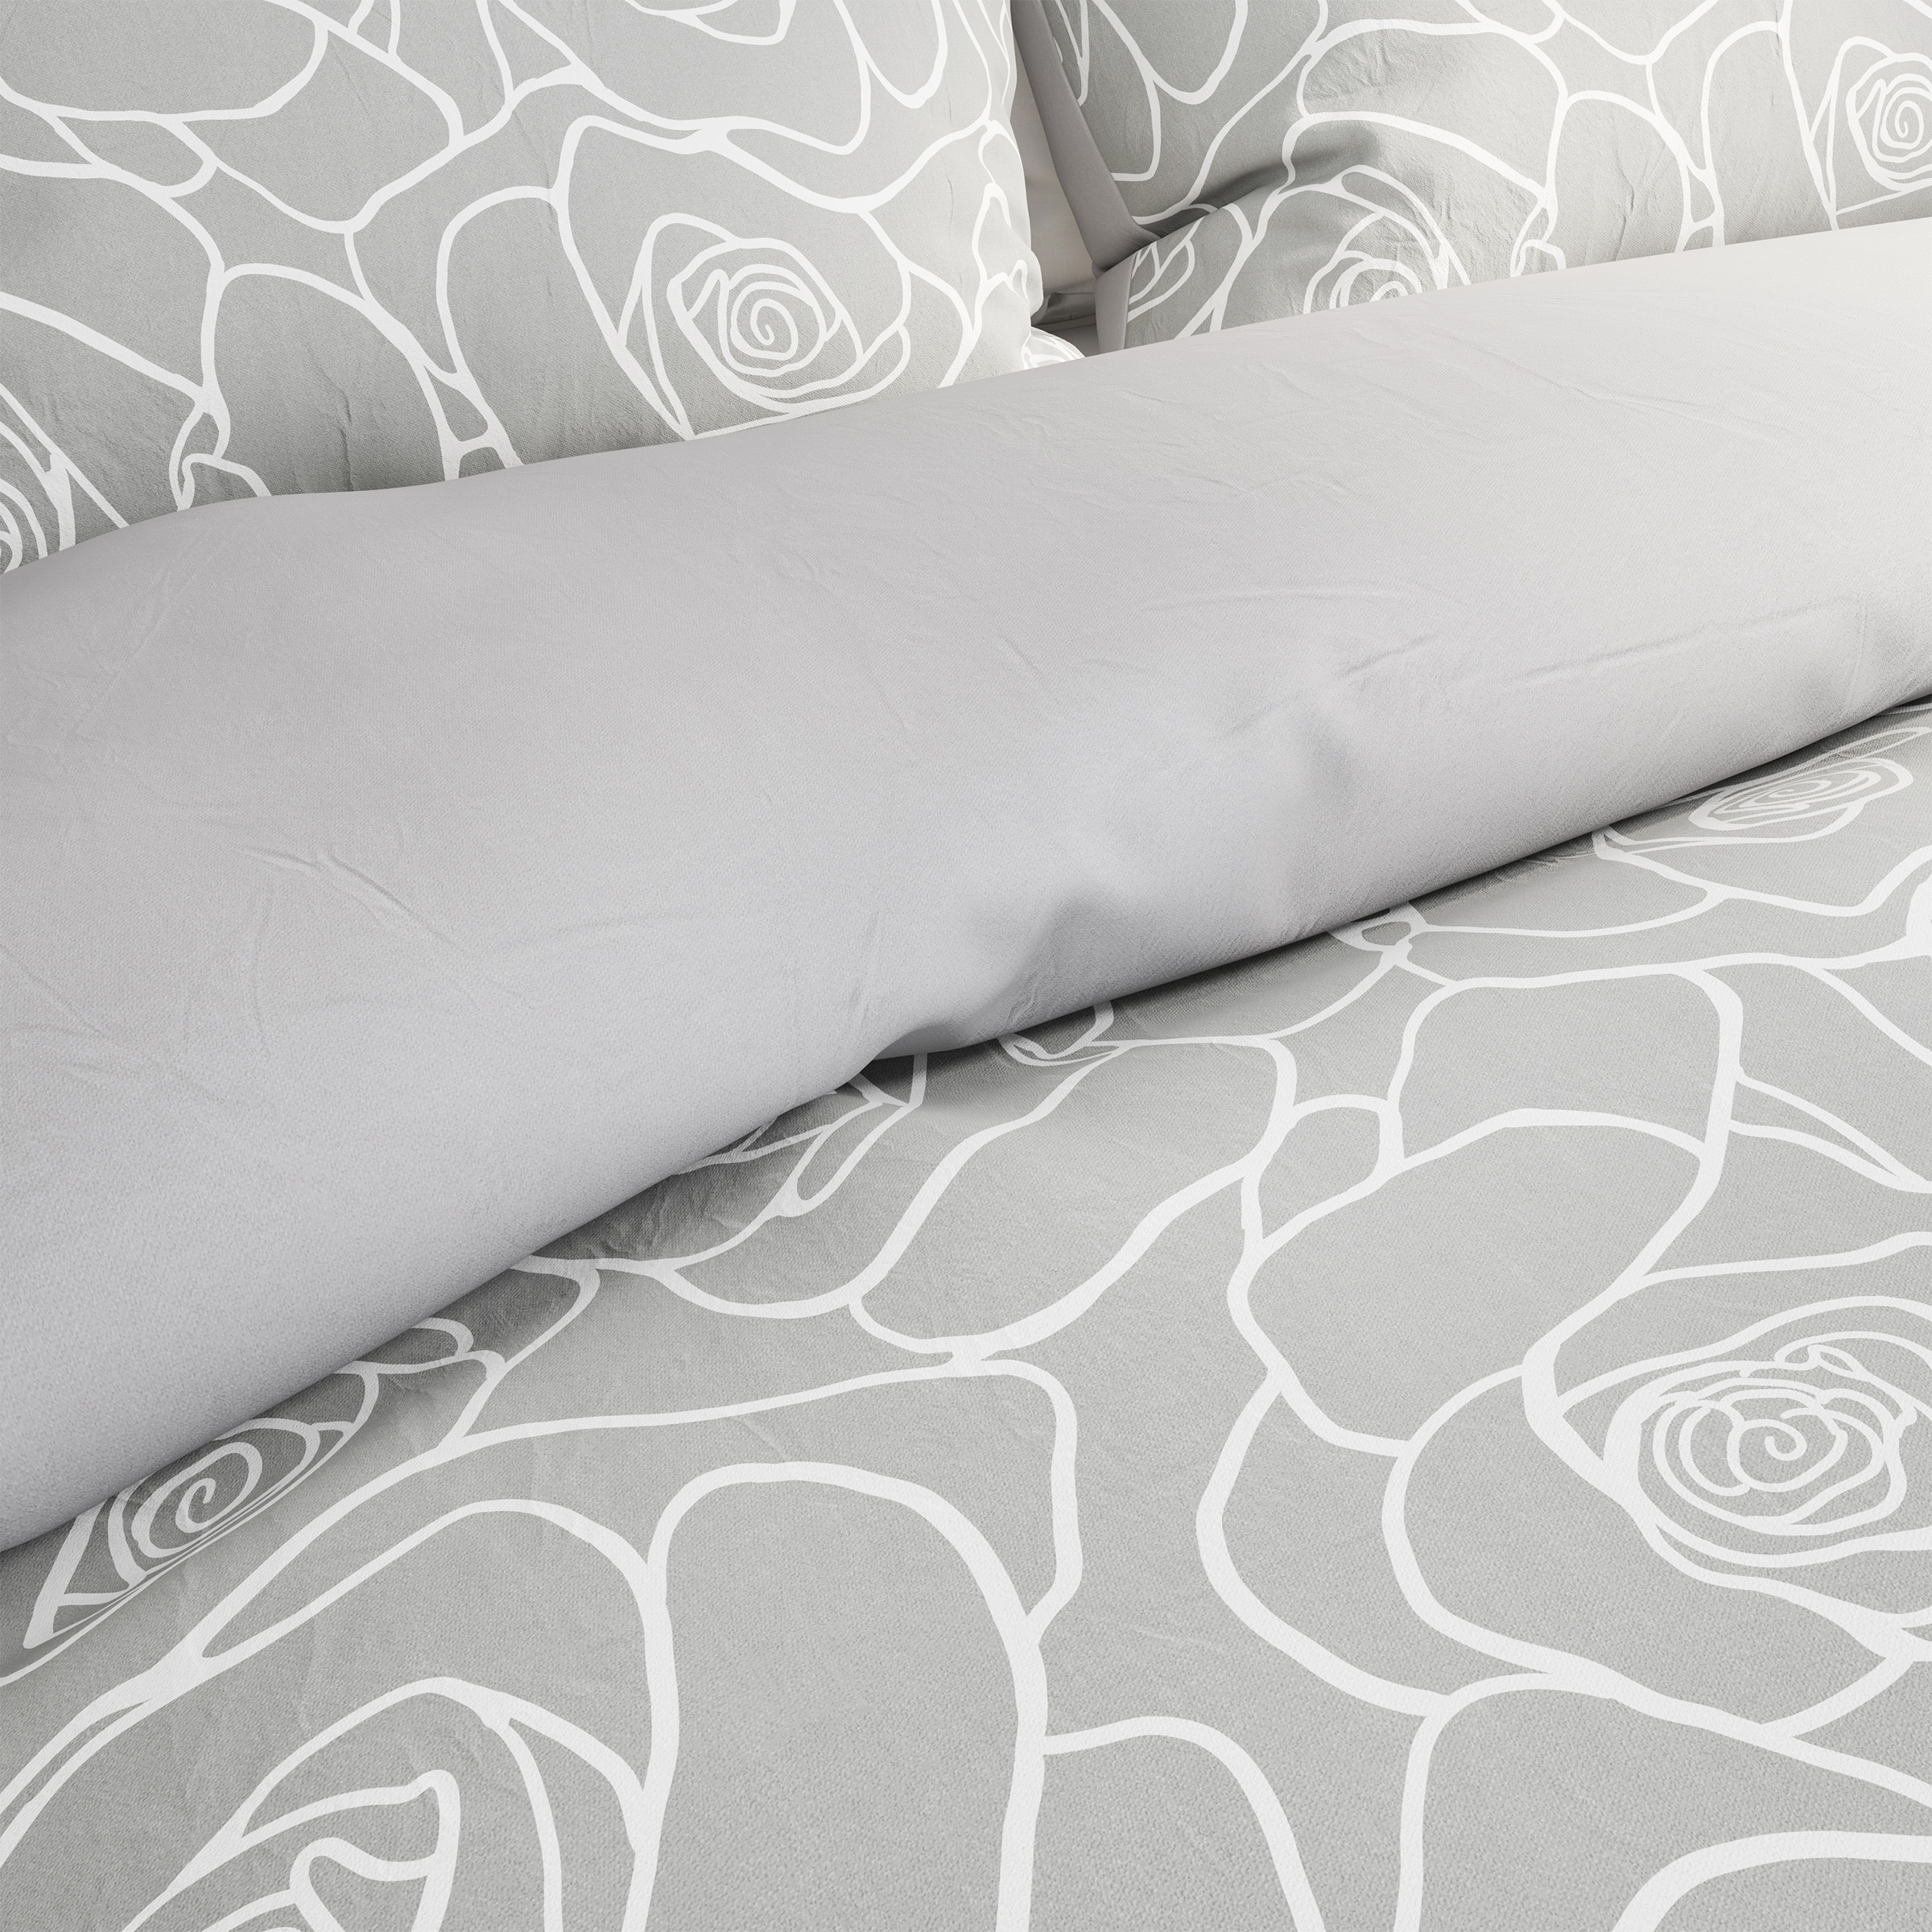 3-Piece Comforter Set â Hypoallergenic Microfiber Bed Of Roses Floral Print Down Alternative All-Season Blanket - Full/Queen